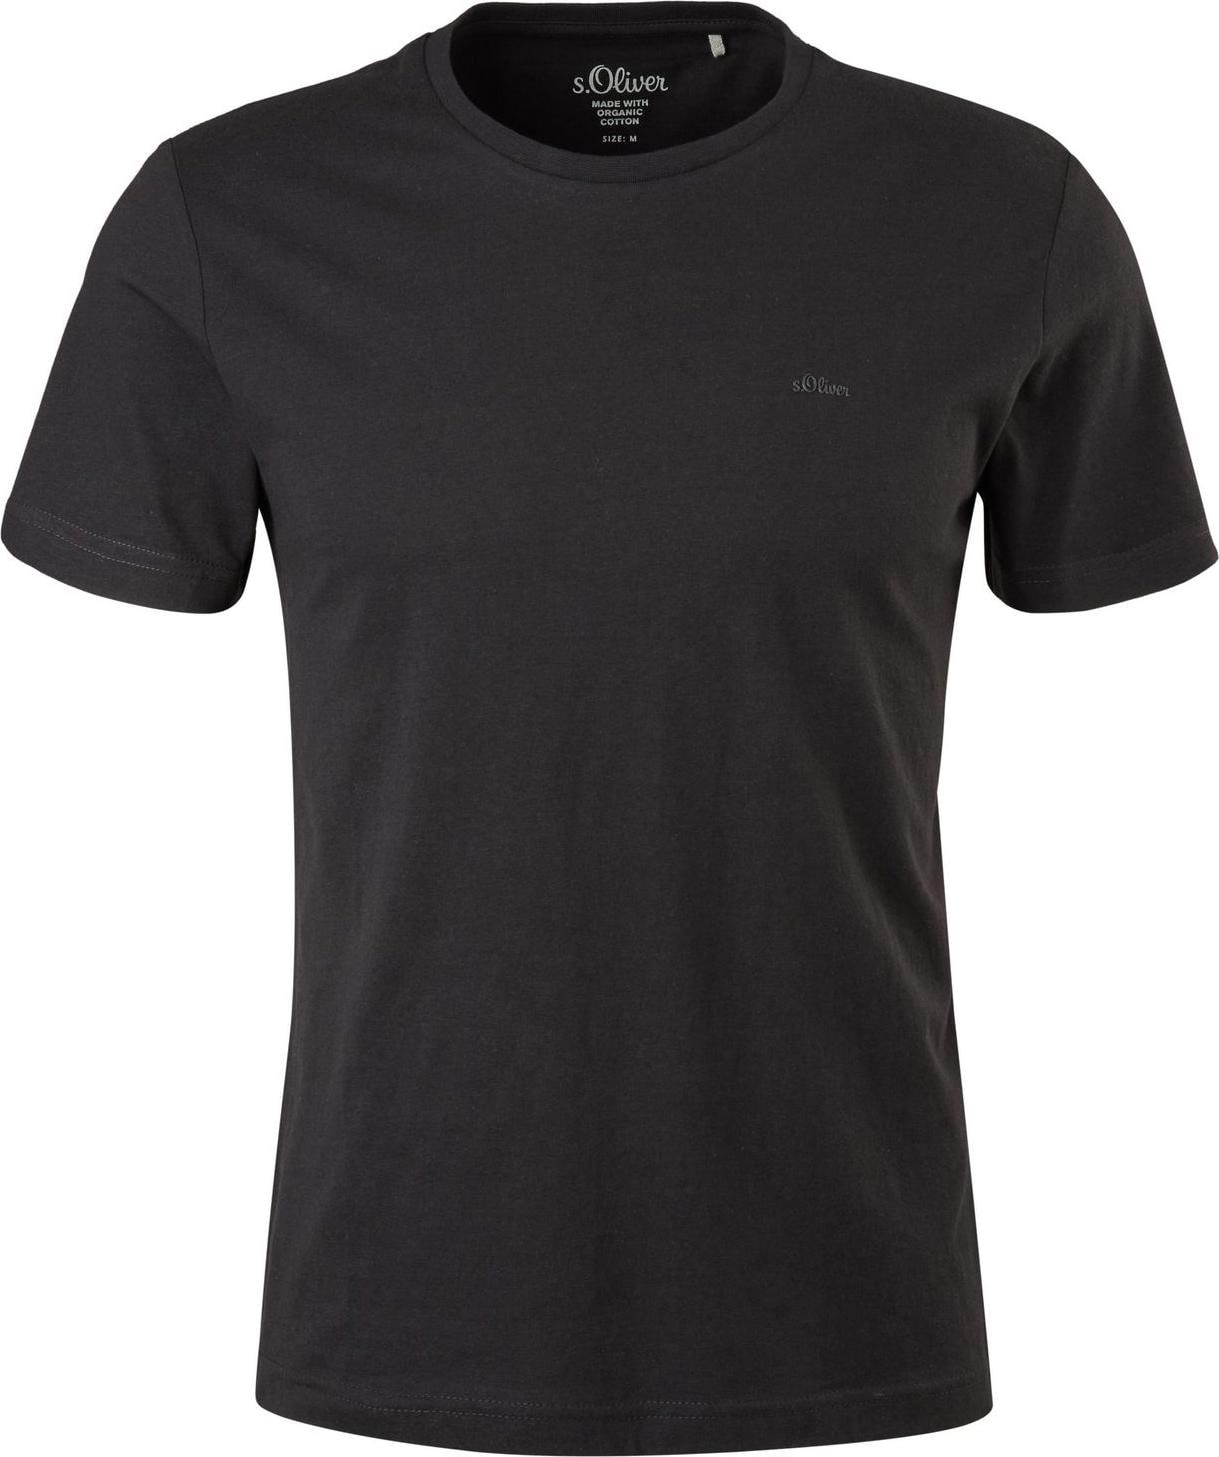 S.Oliver, Herren, Shirt, Herren T-Shirts Baumwolle Rundhals Ausschnitt Logo modern 2 Stück, Schwarz, (XXL)